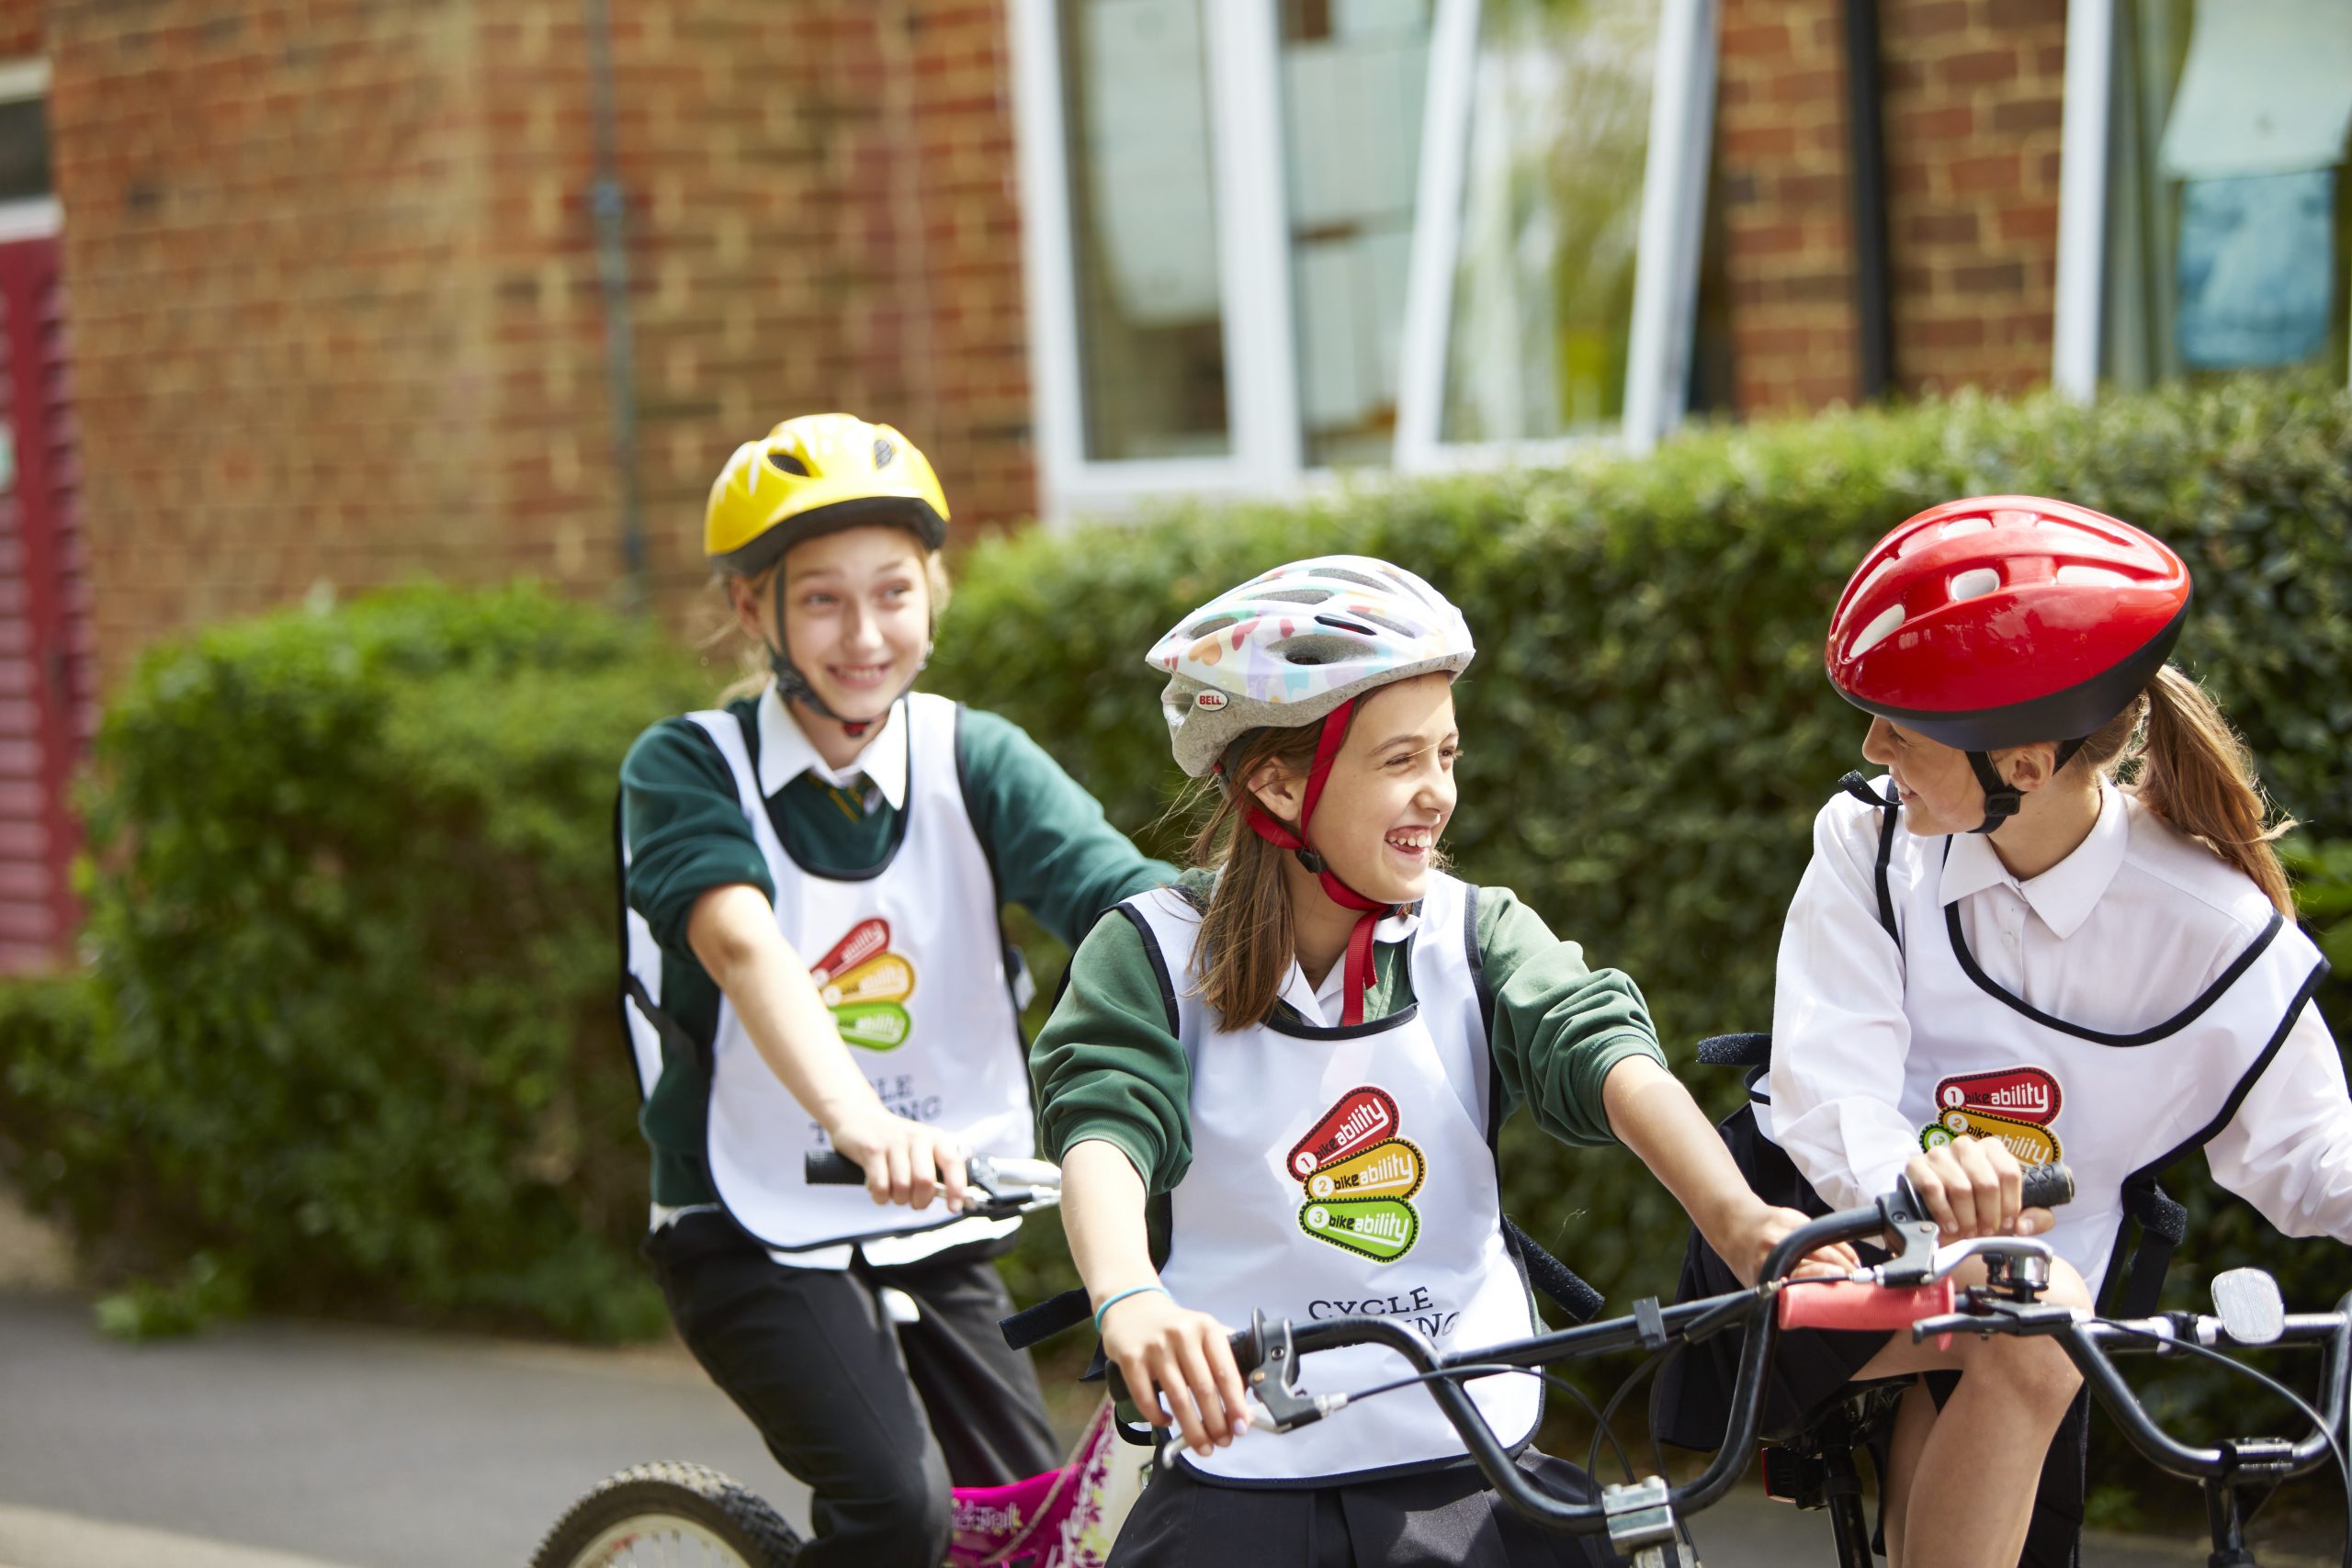 Three children on bikes